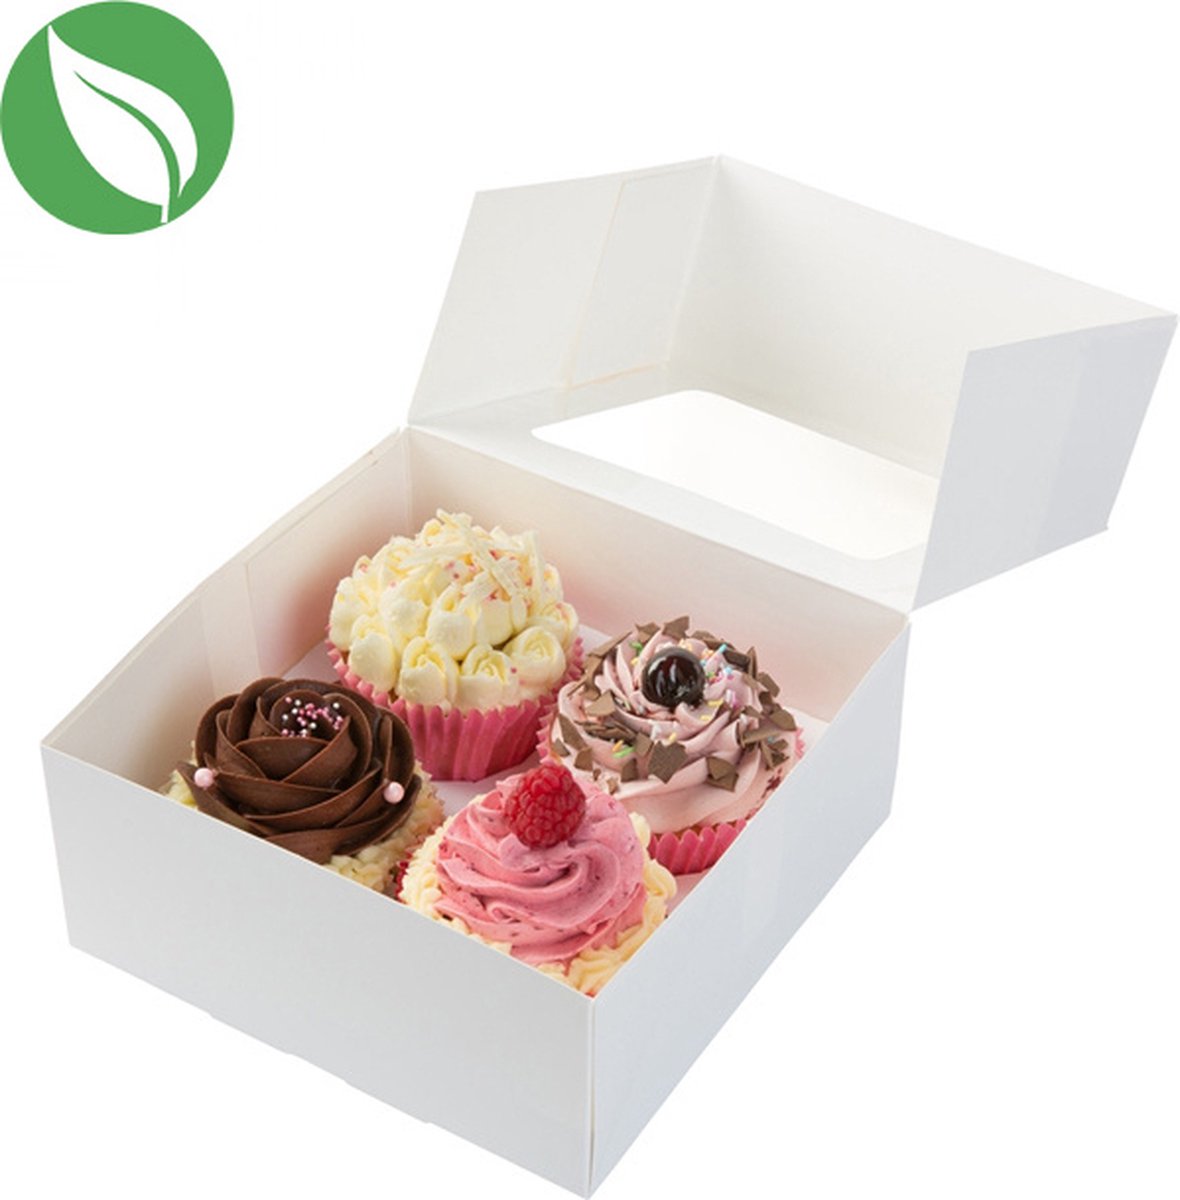 Biologische doos voor 4 cupcakes (25 stuks)